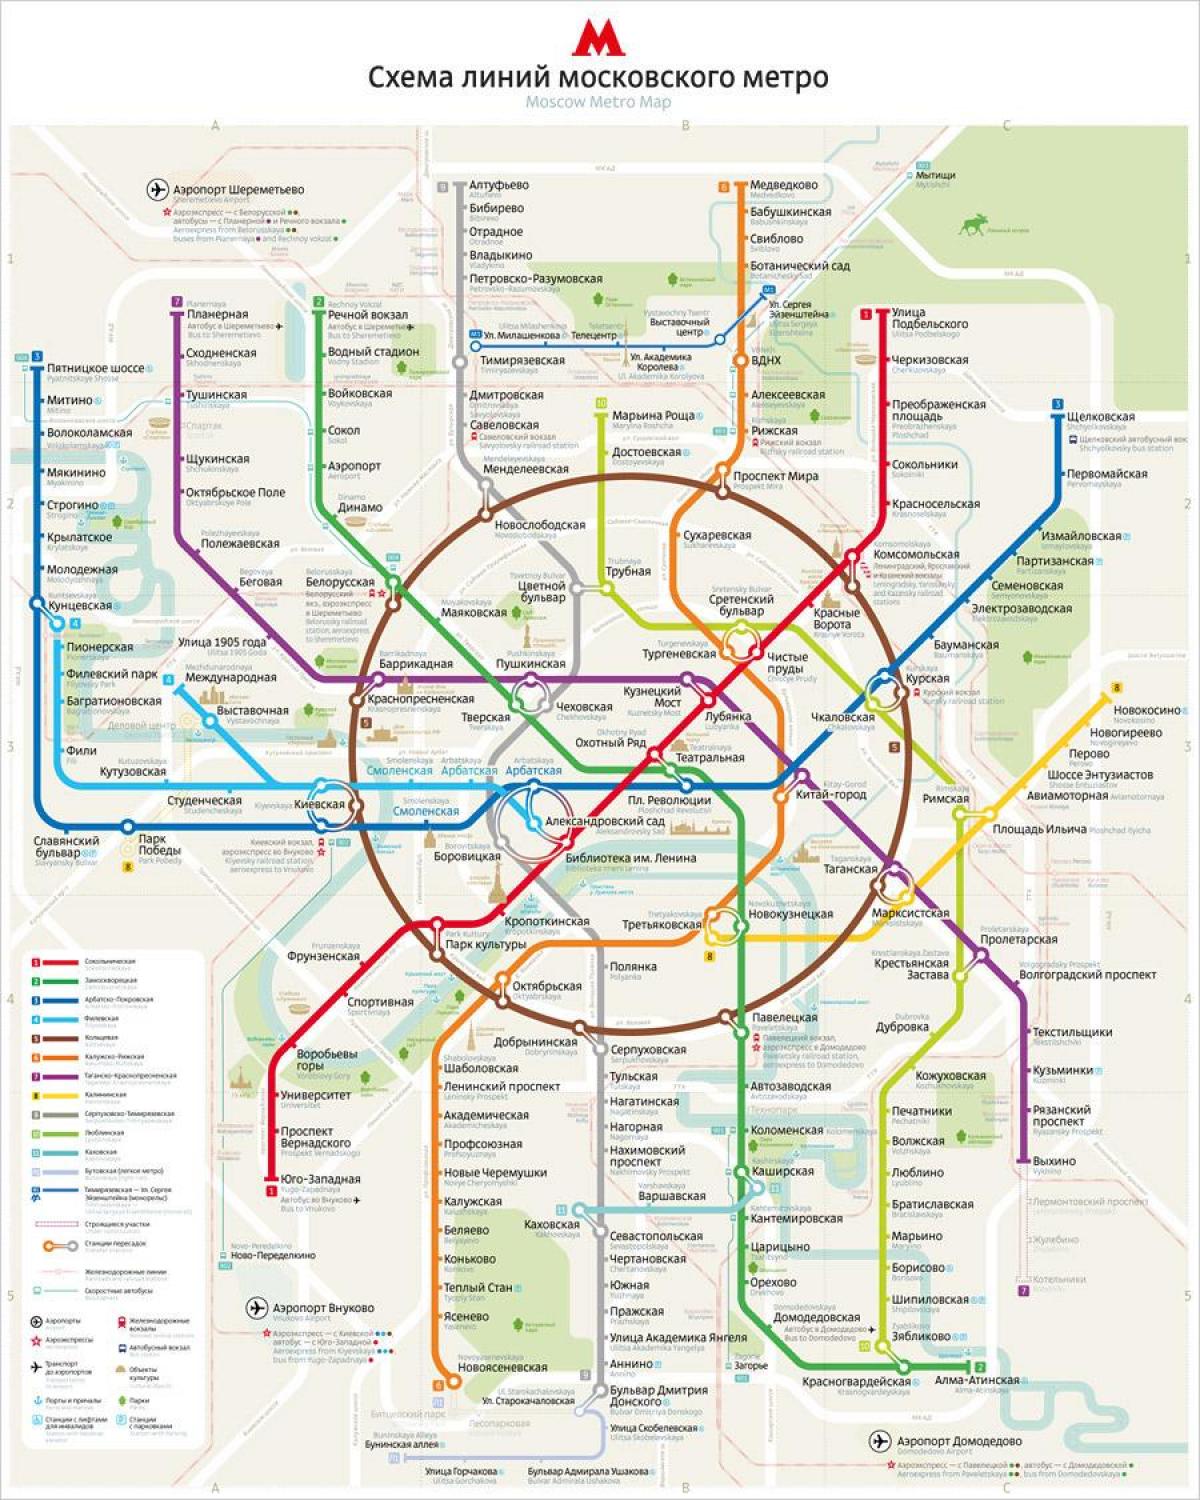 kort af Moskvu metro ensku og rússneska